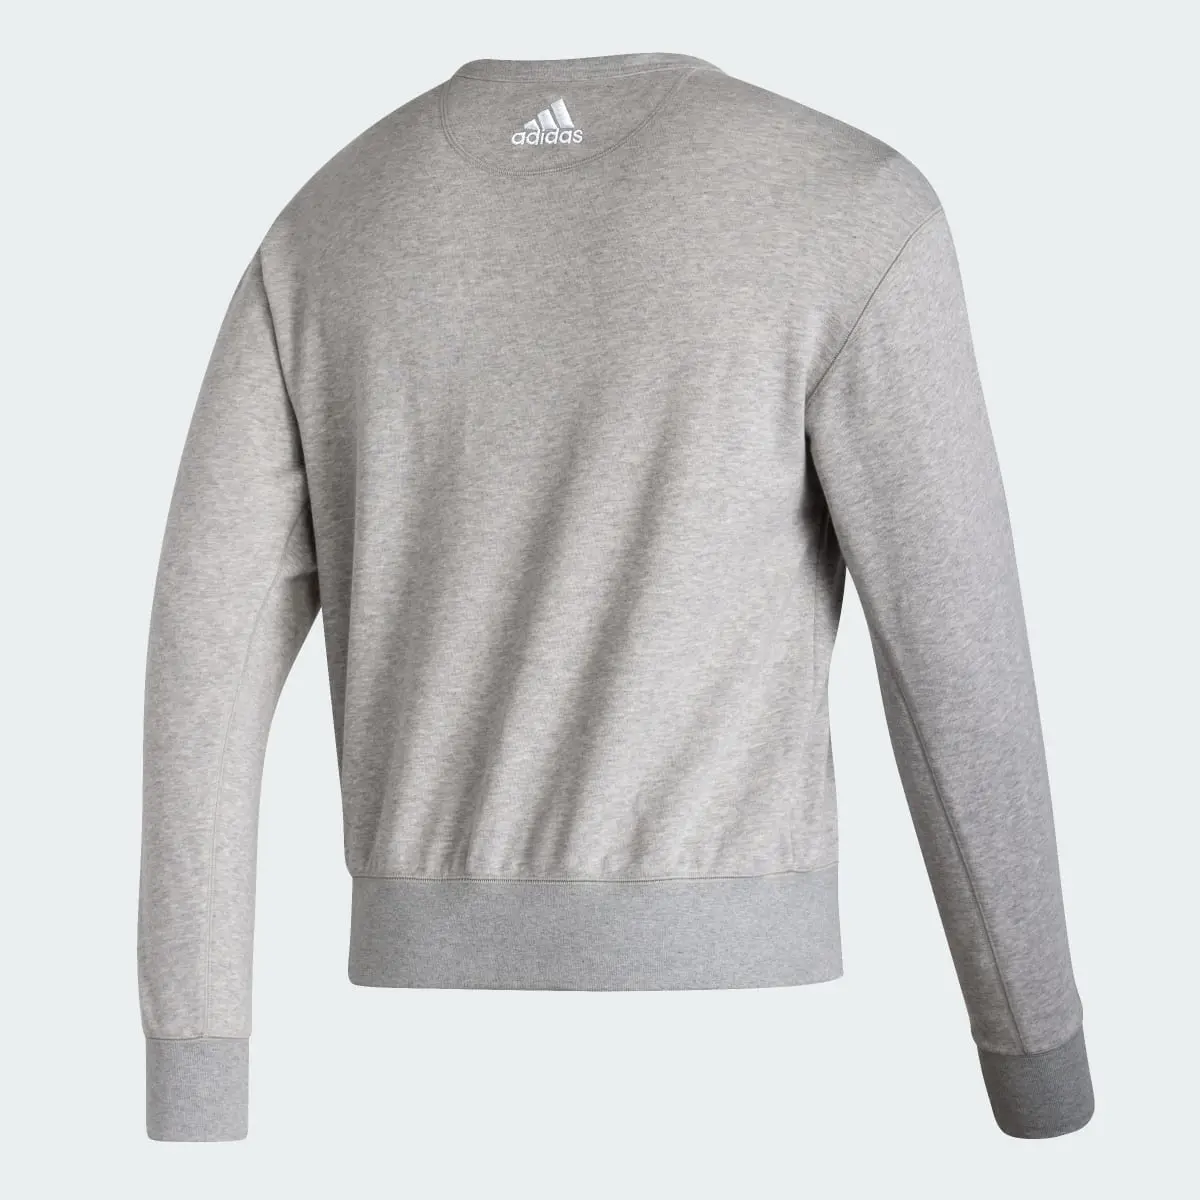 Adidas Washington Long Sleeve Sweatshirt. 2